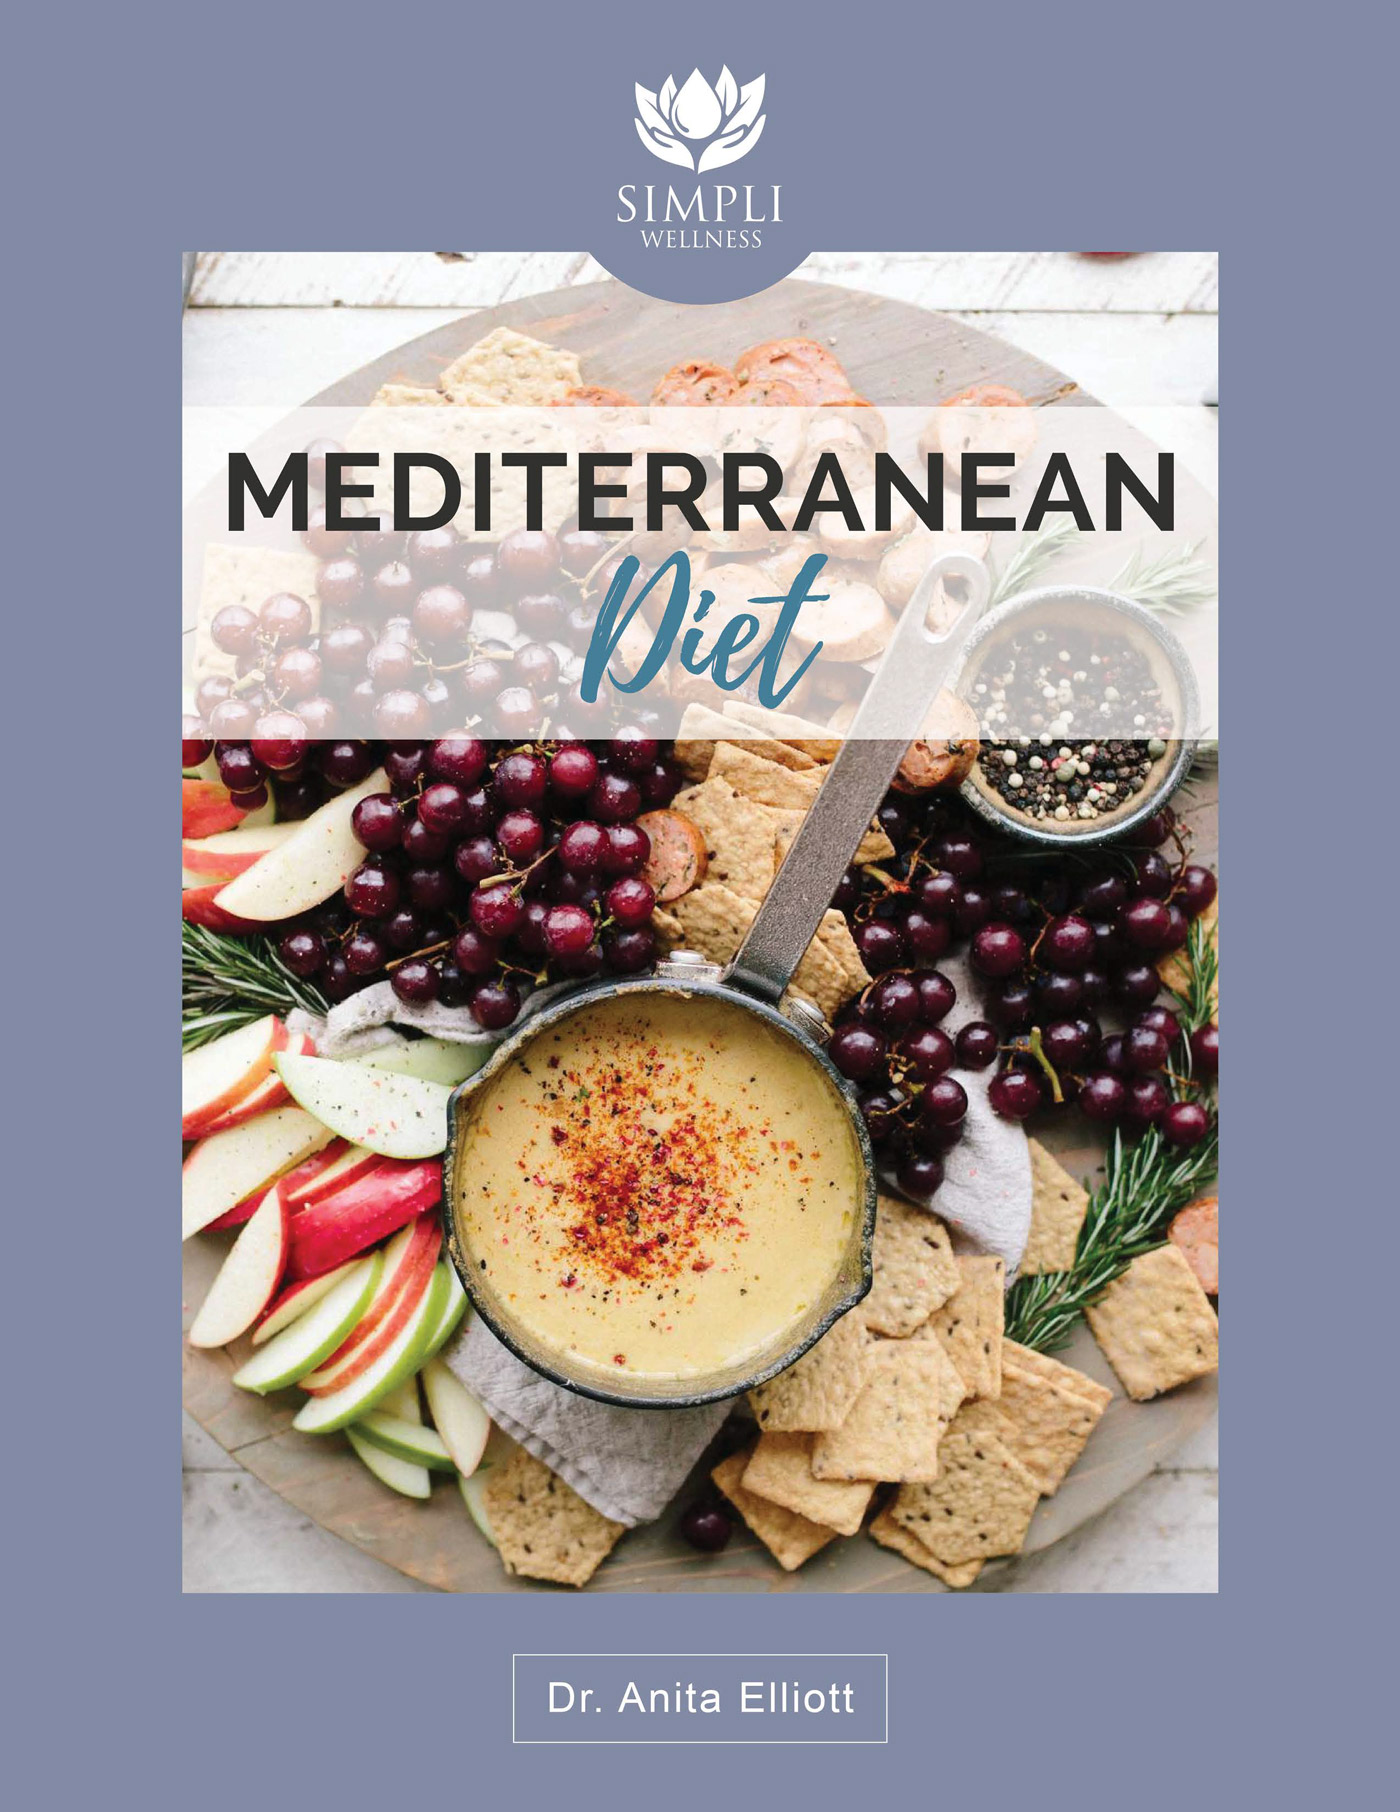 SW_Mediterranean_Diet_WellBeing_Guide-1